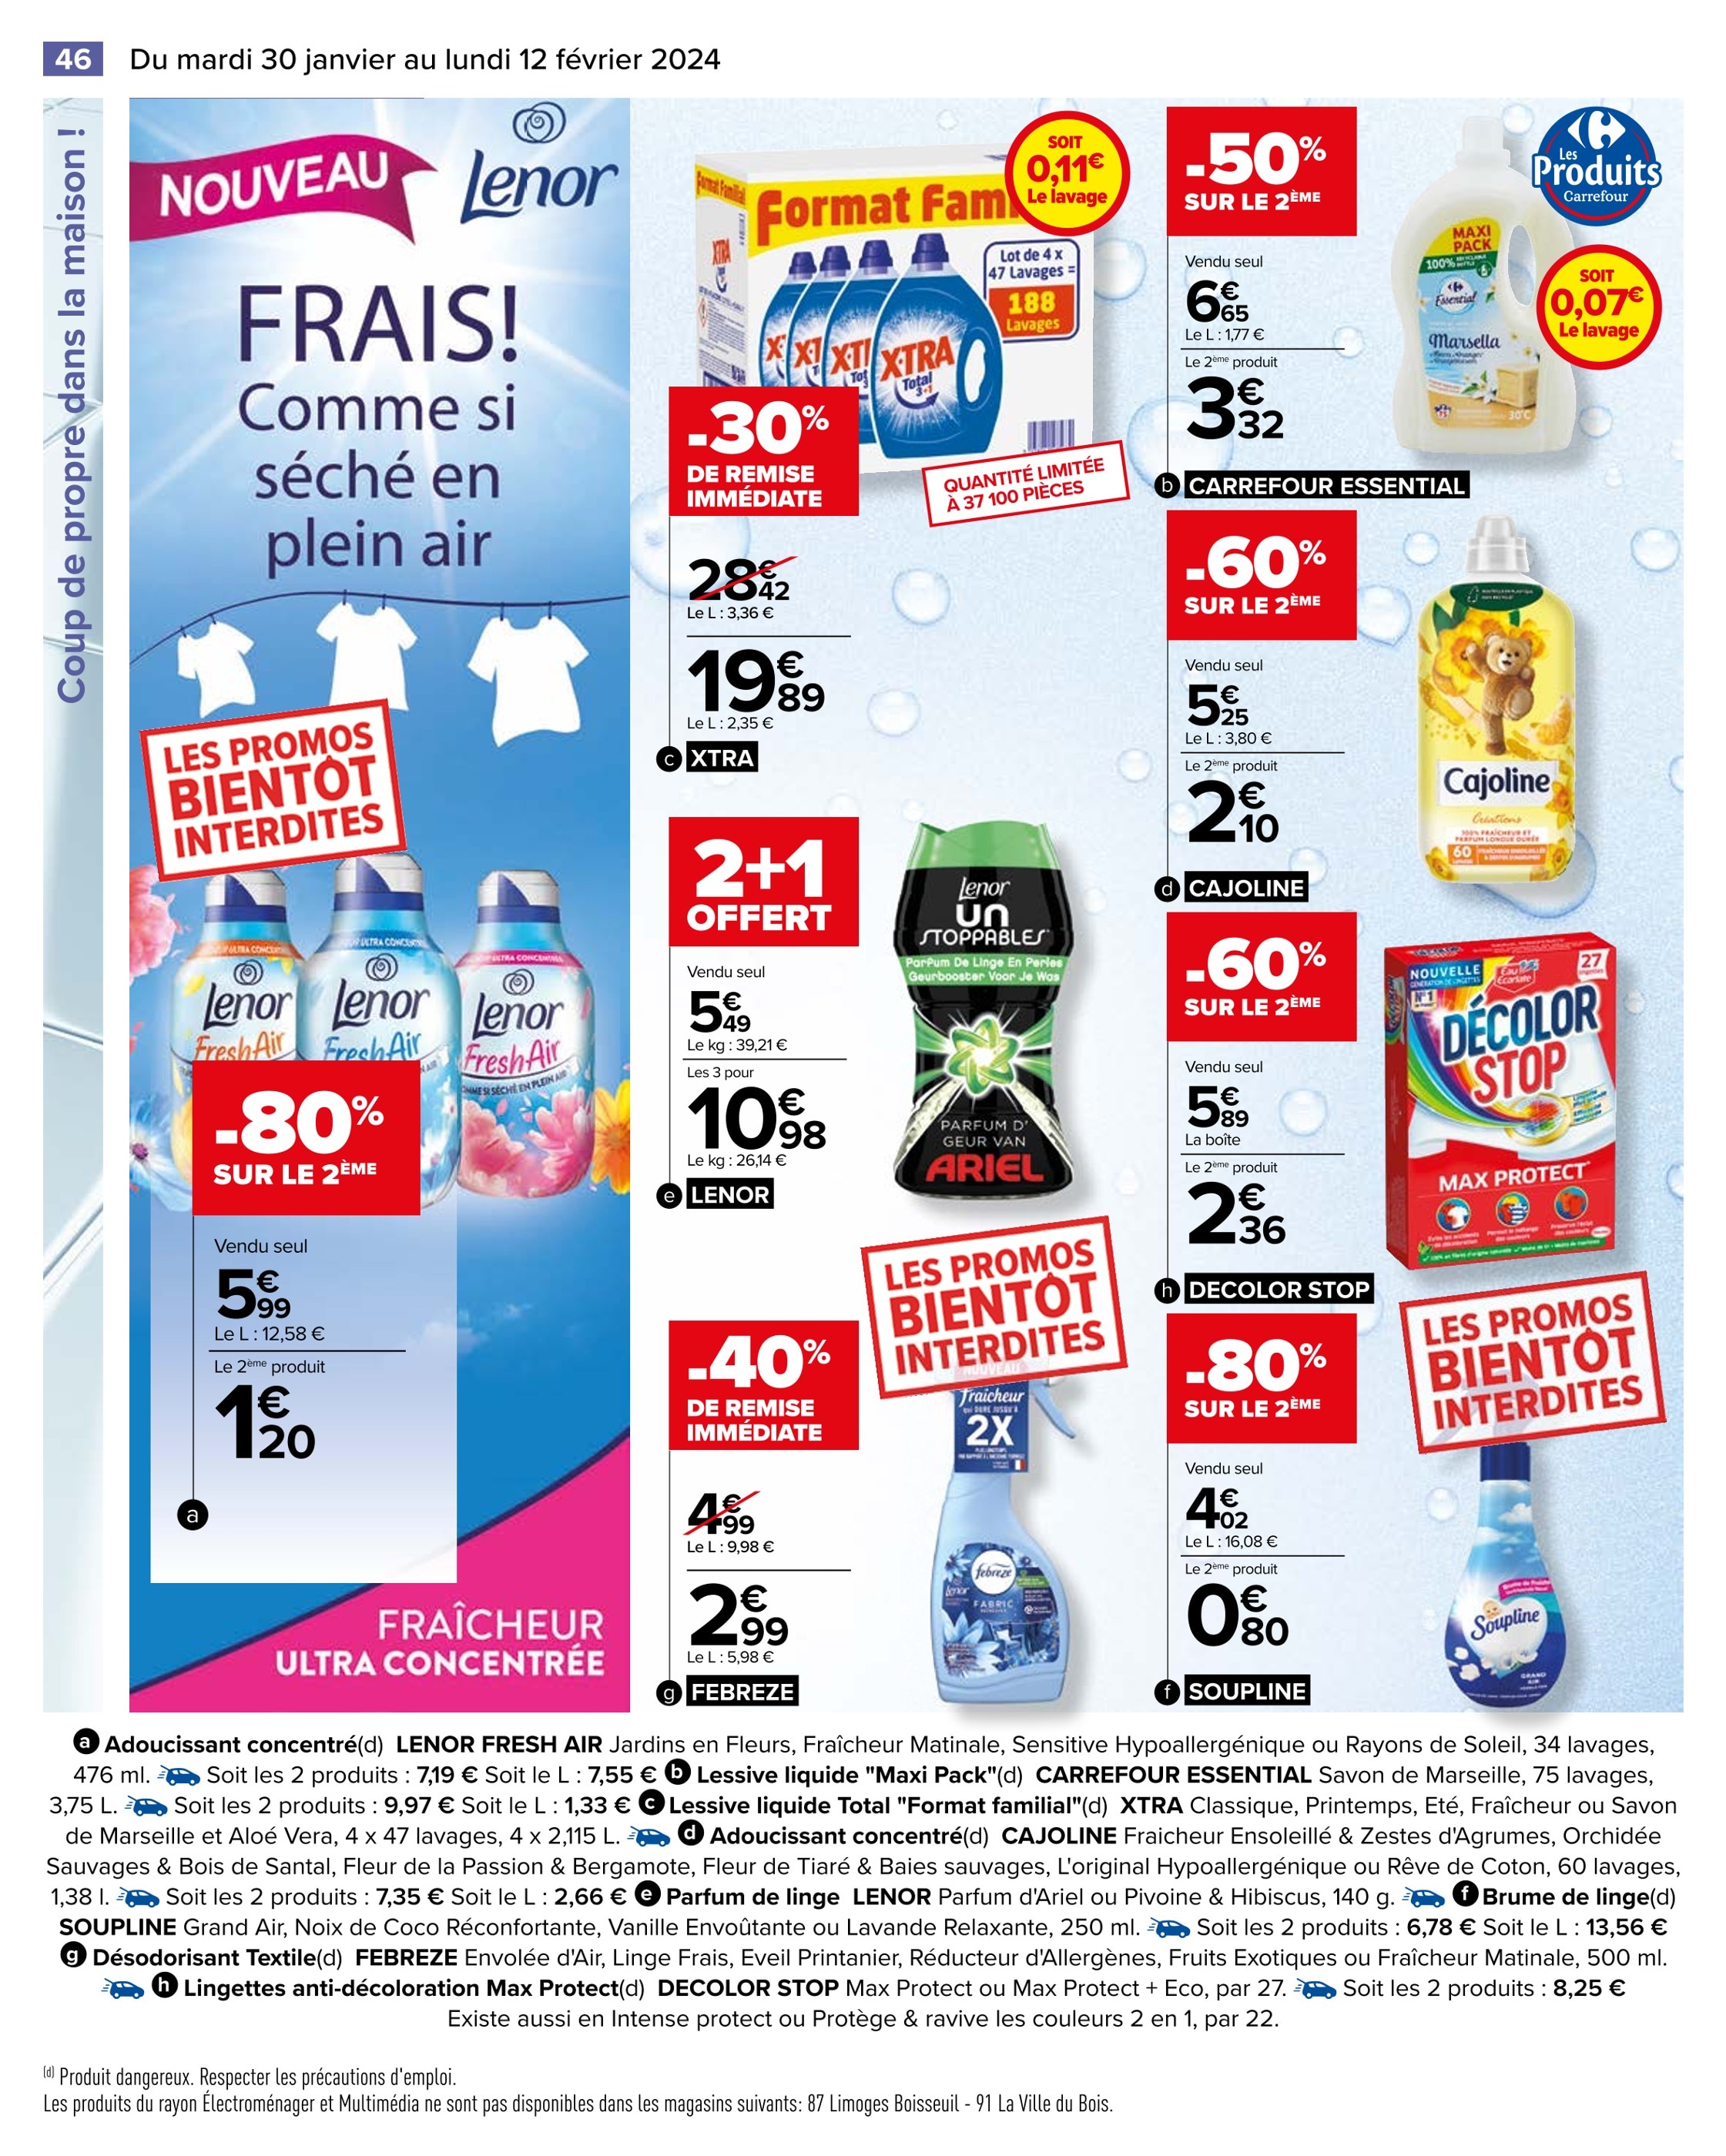 Soupline Carrefour ᐅ Promos et prix dans le catalogue de la semaine